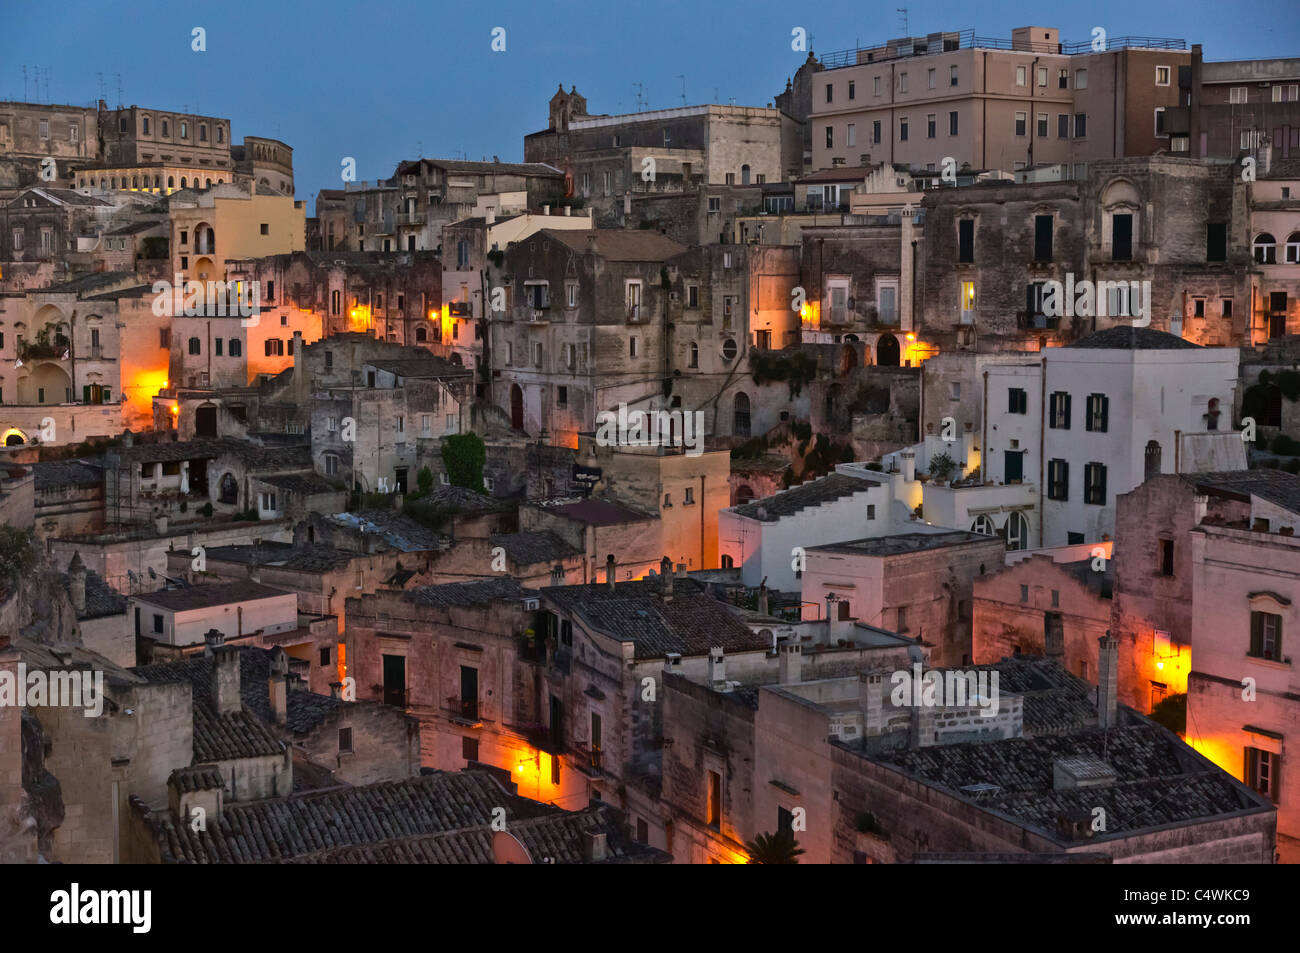 Italy - Matera, the Sasso Barisano at dusk. Stock Photo